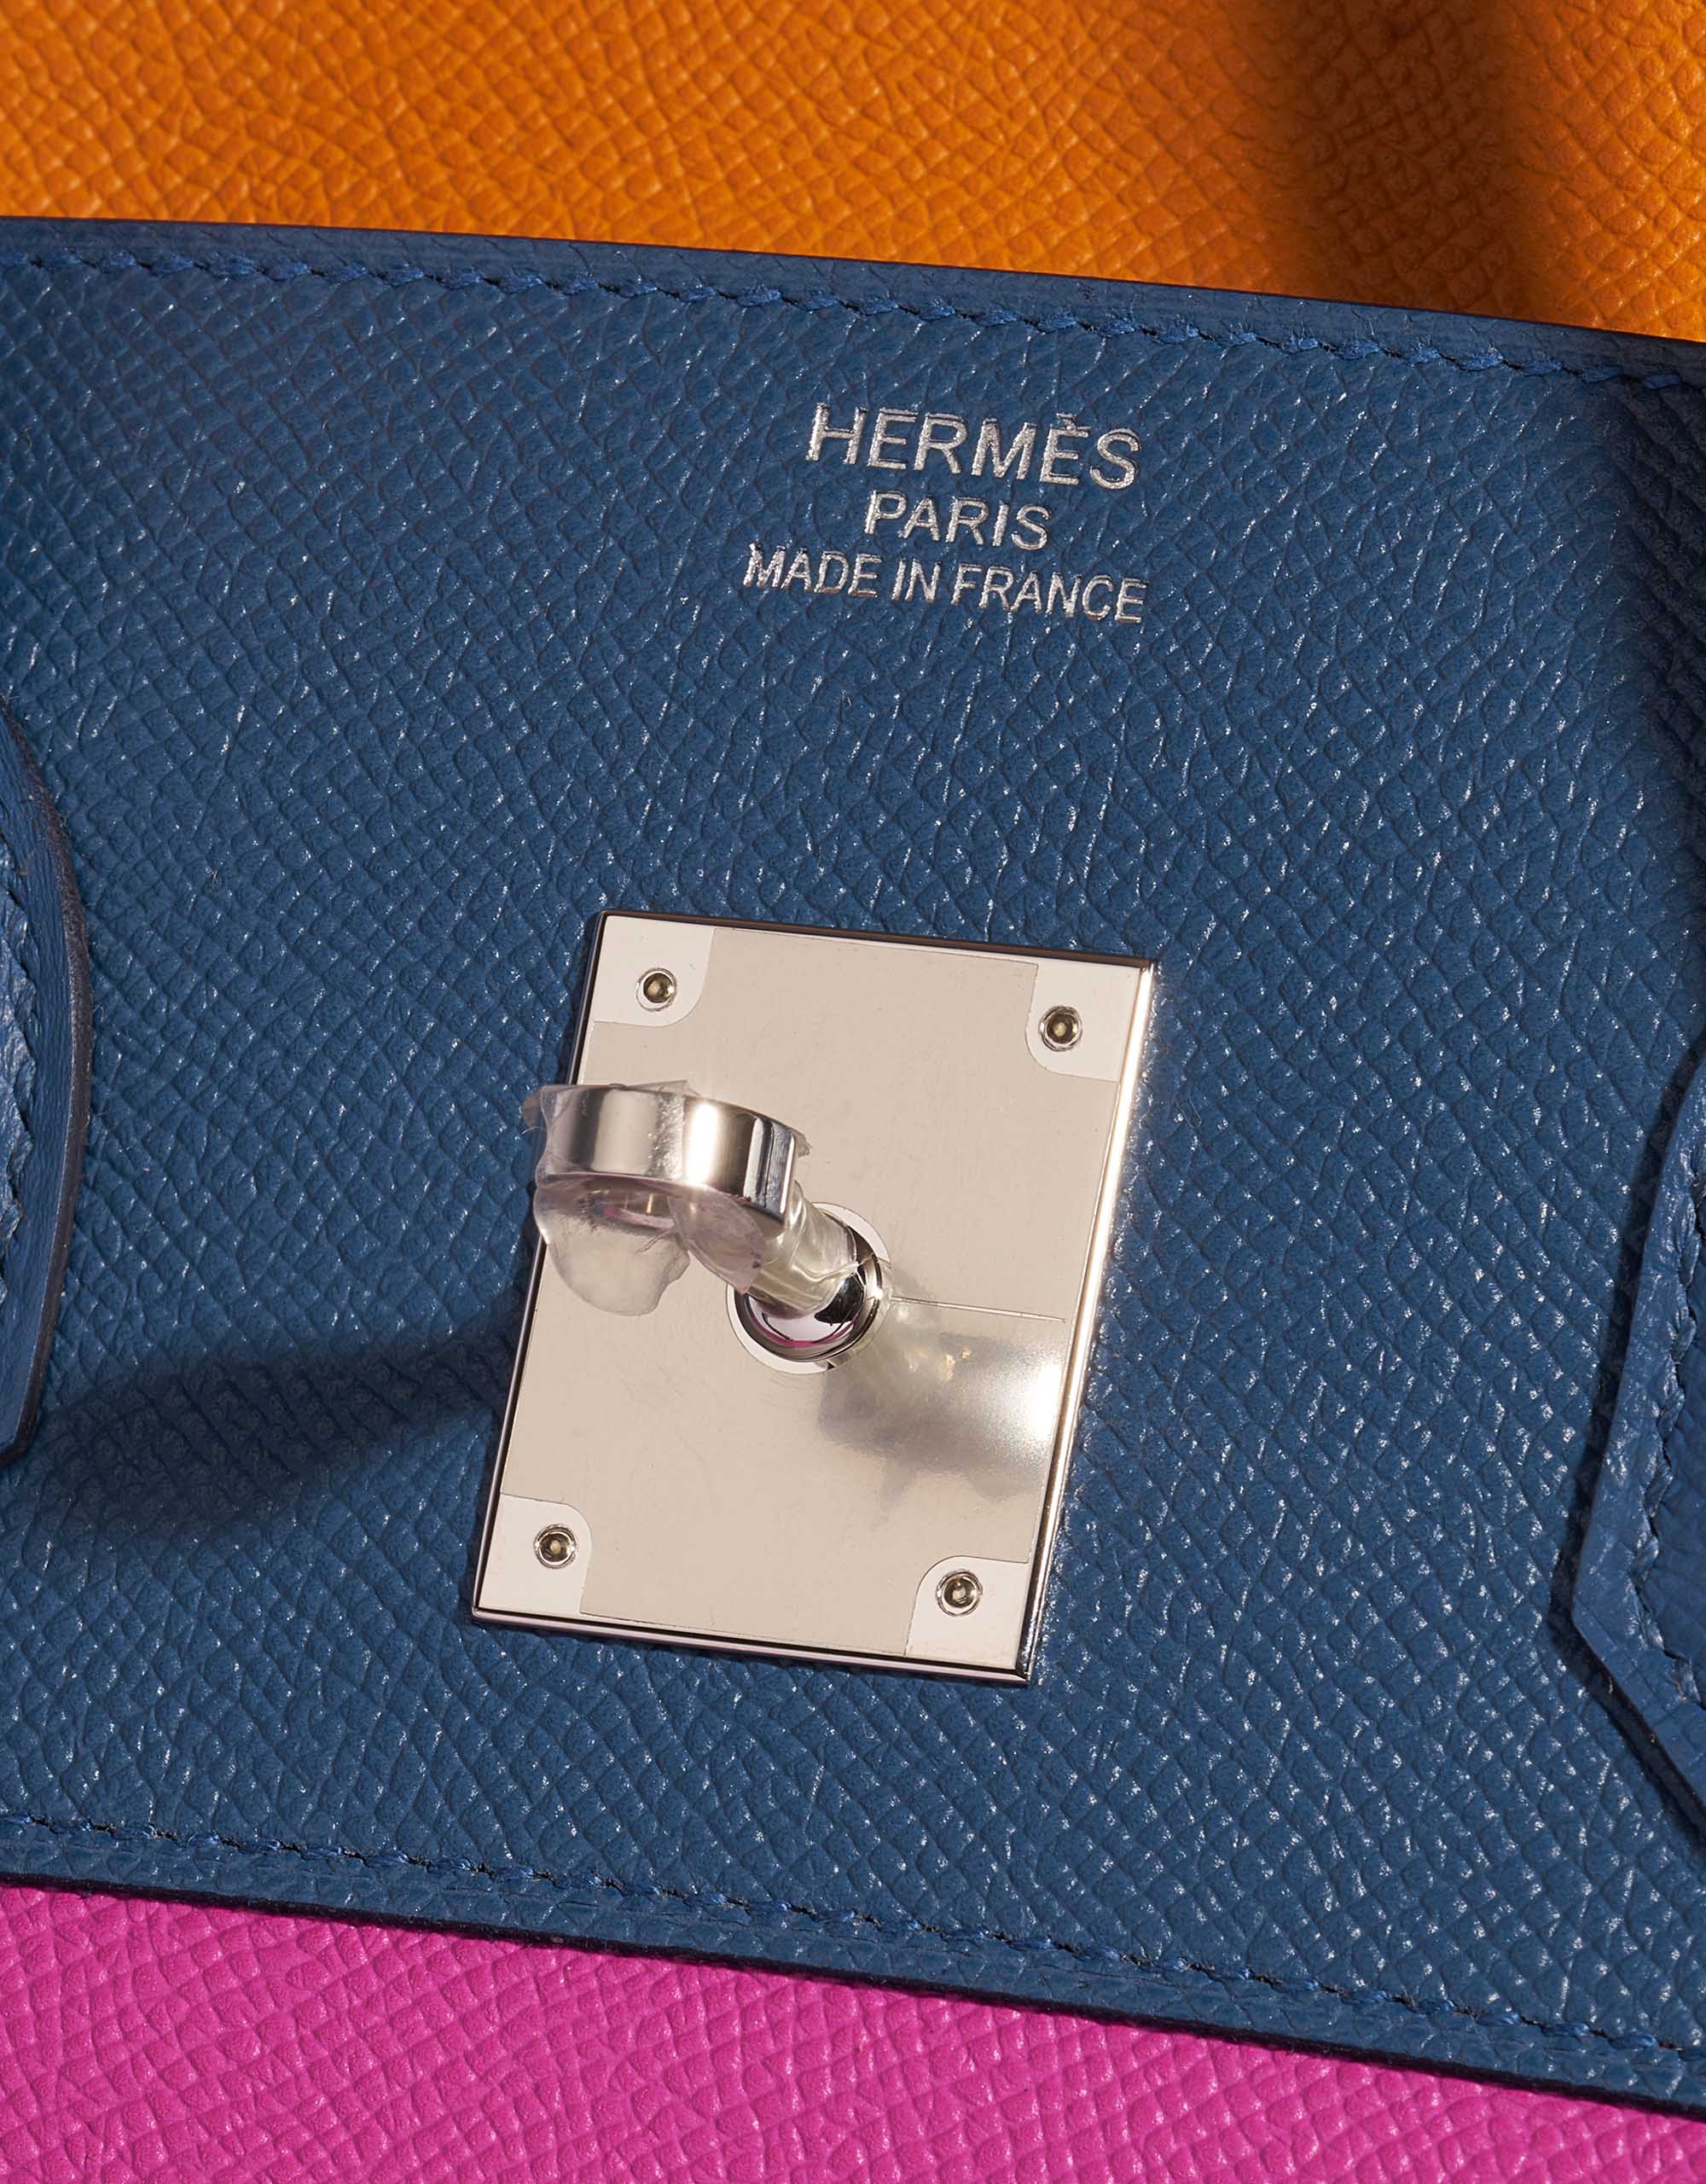 Gebrauchte Hermès Tasche Birkin 35 Sunset Rainbow Epsom Apricot / Blue Achat / Magnolia / Rouge Casaque Multicolour Logo | Verkaufen Sie Ihre Designer-Tasche auf Saclab.com